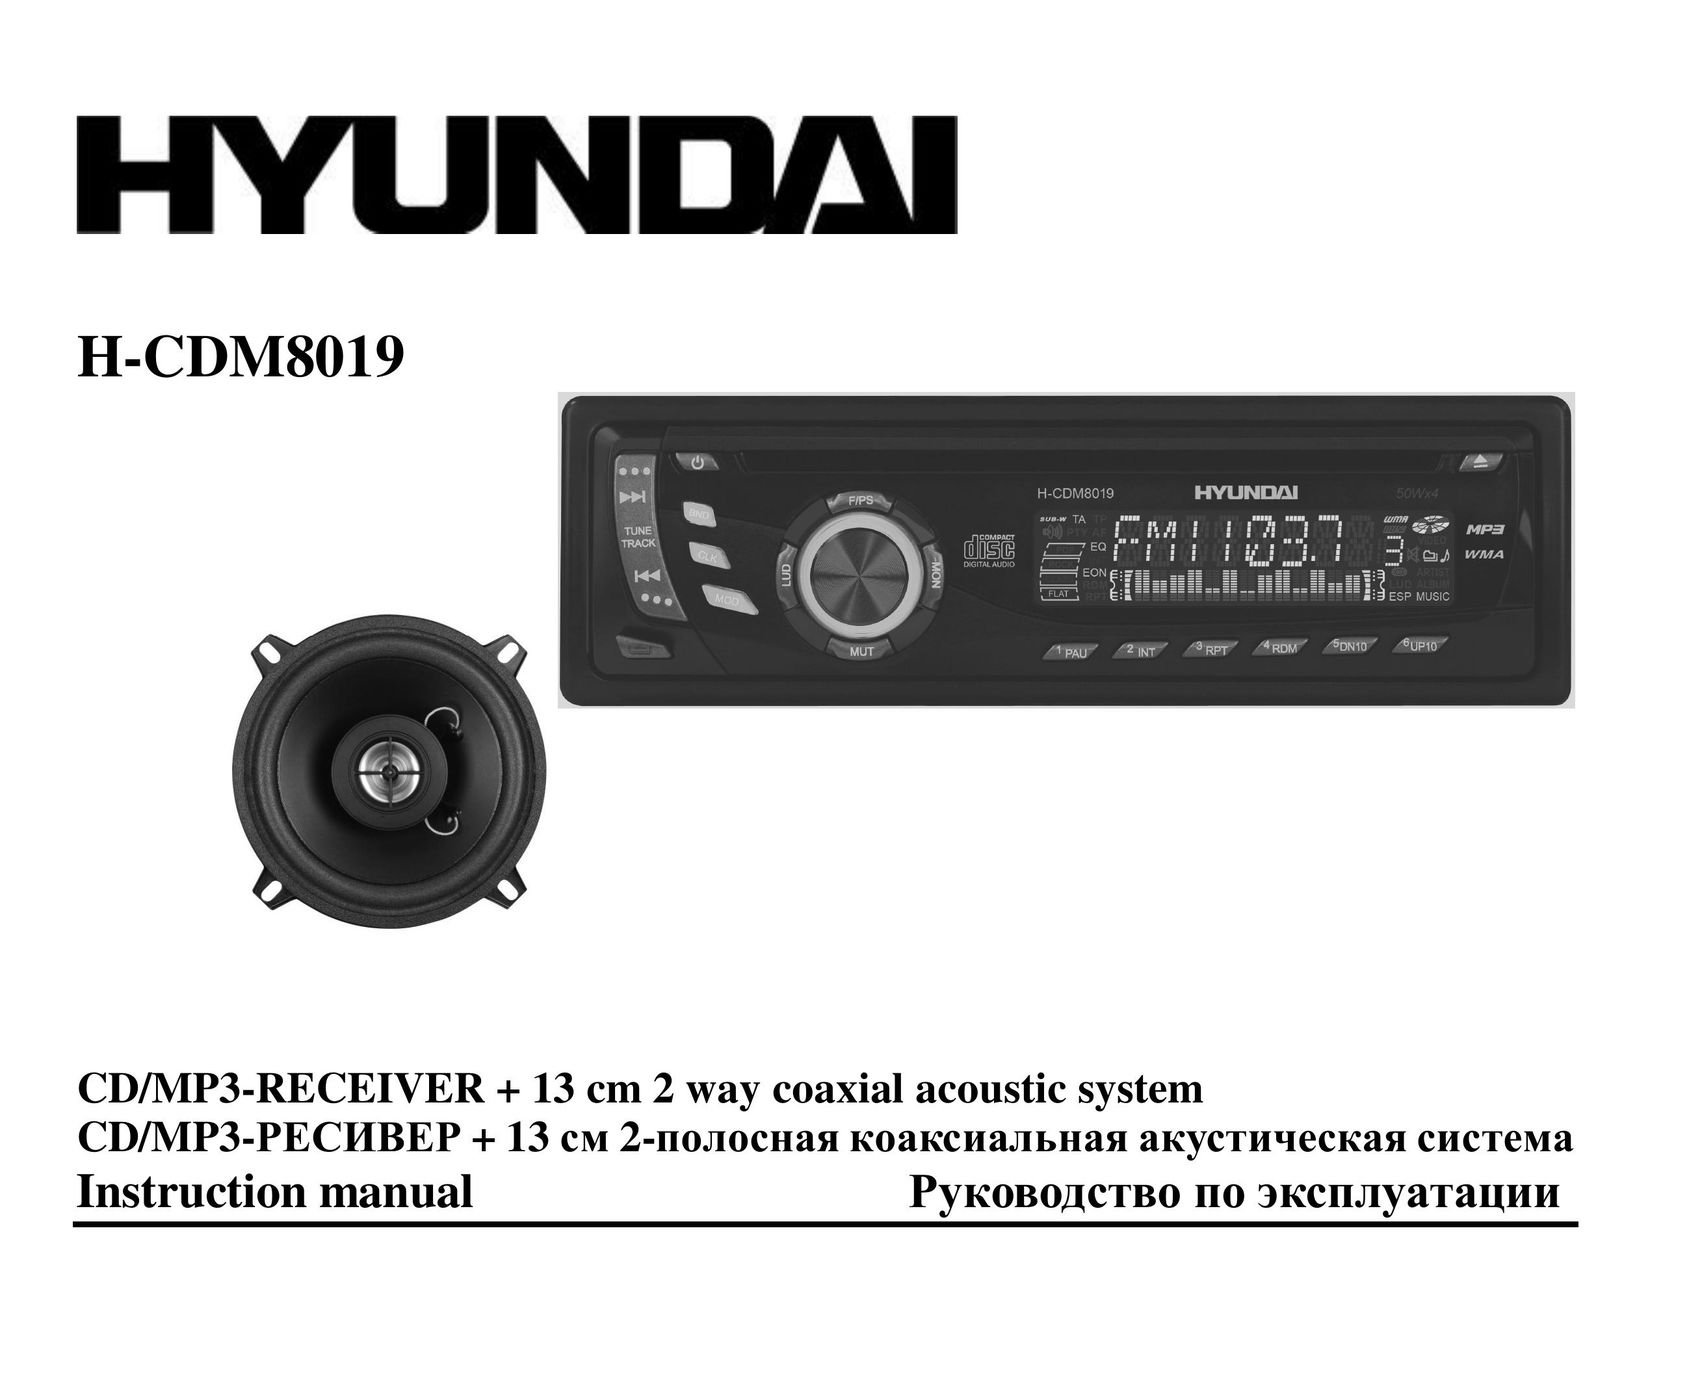 Hyundai H-CDM8019 Car Stereo System User Manual